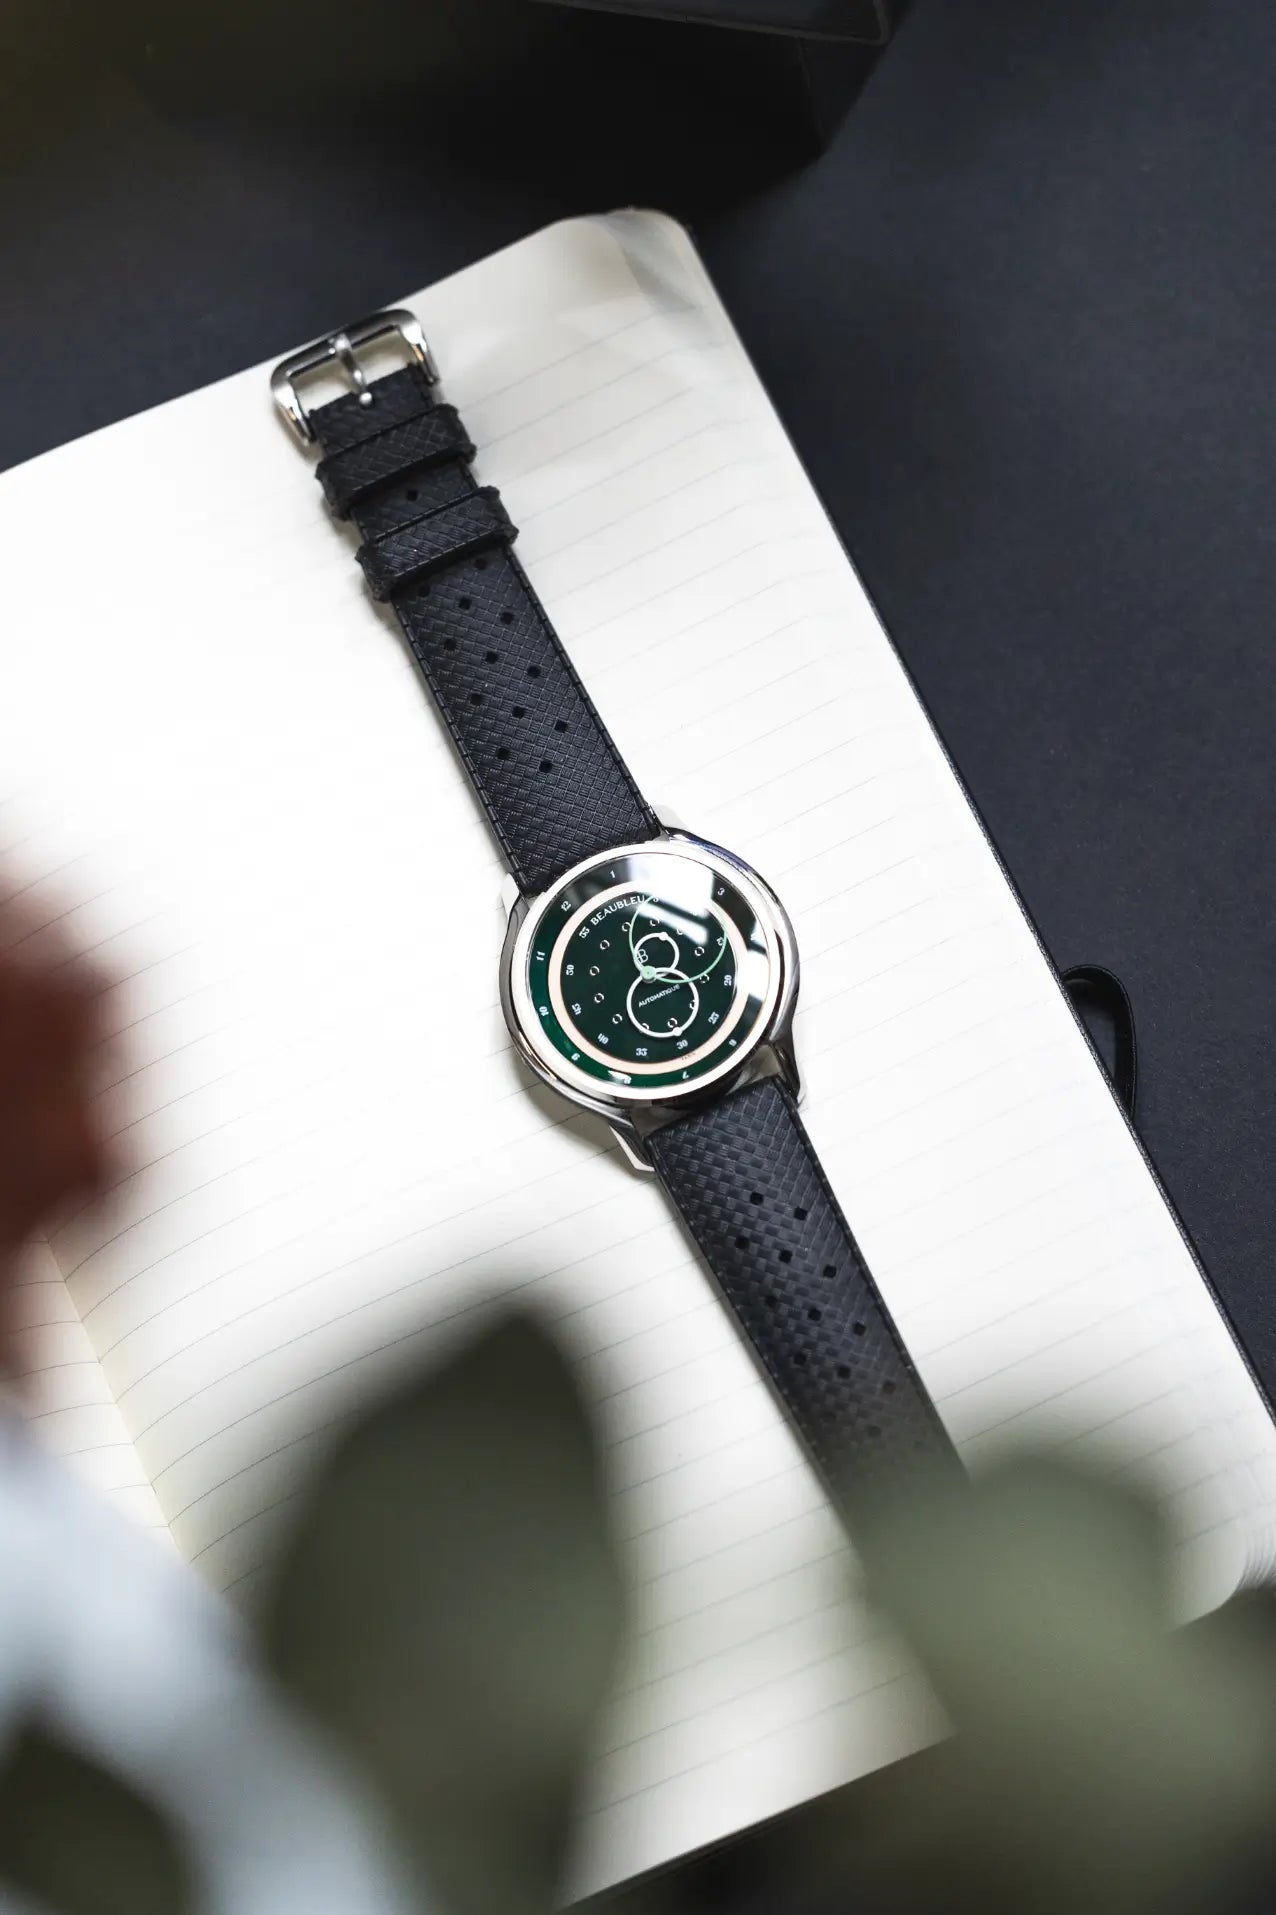 Montre GMT Green avec un bracelet tropic gris, posée sur une page de carnet